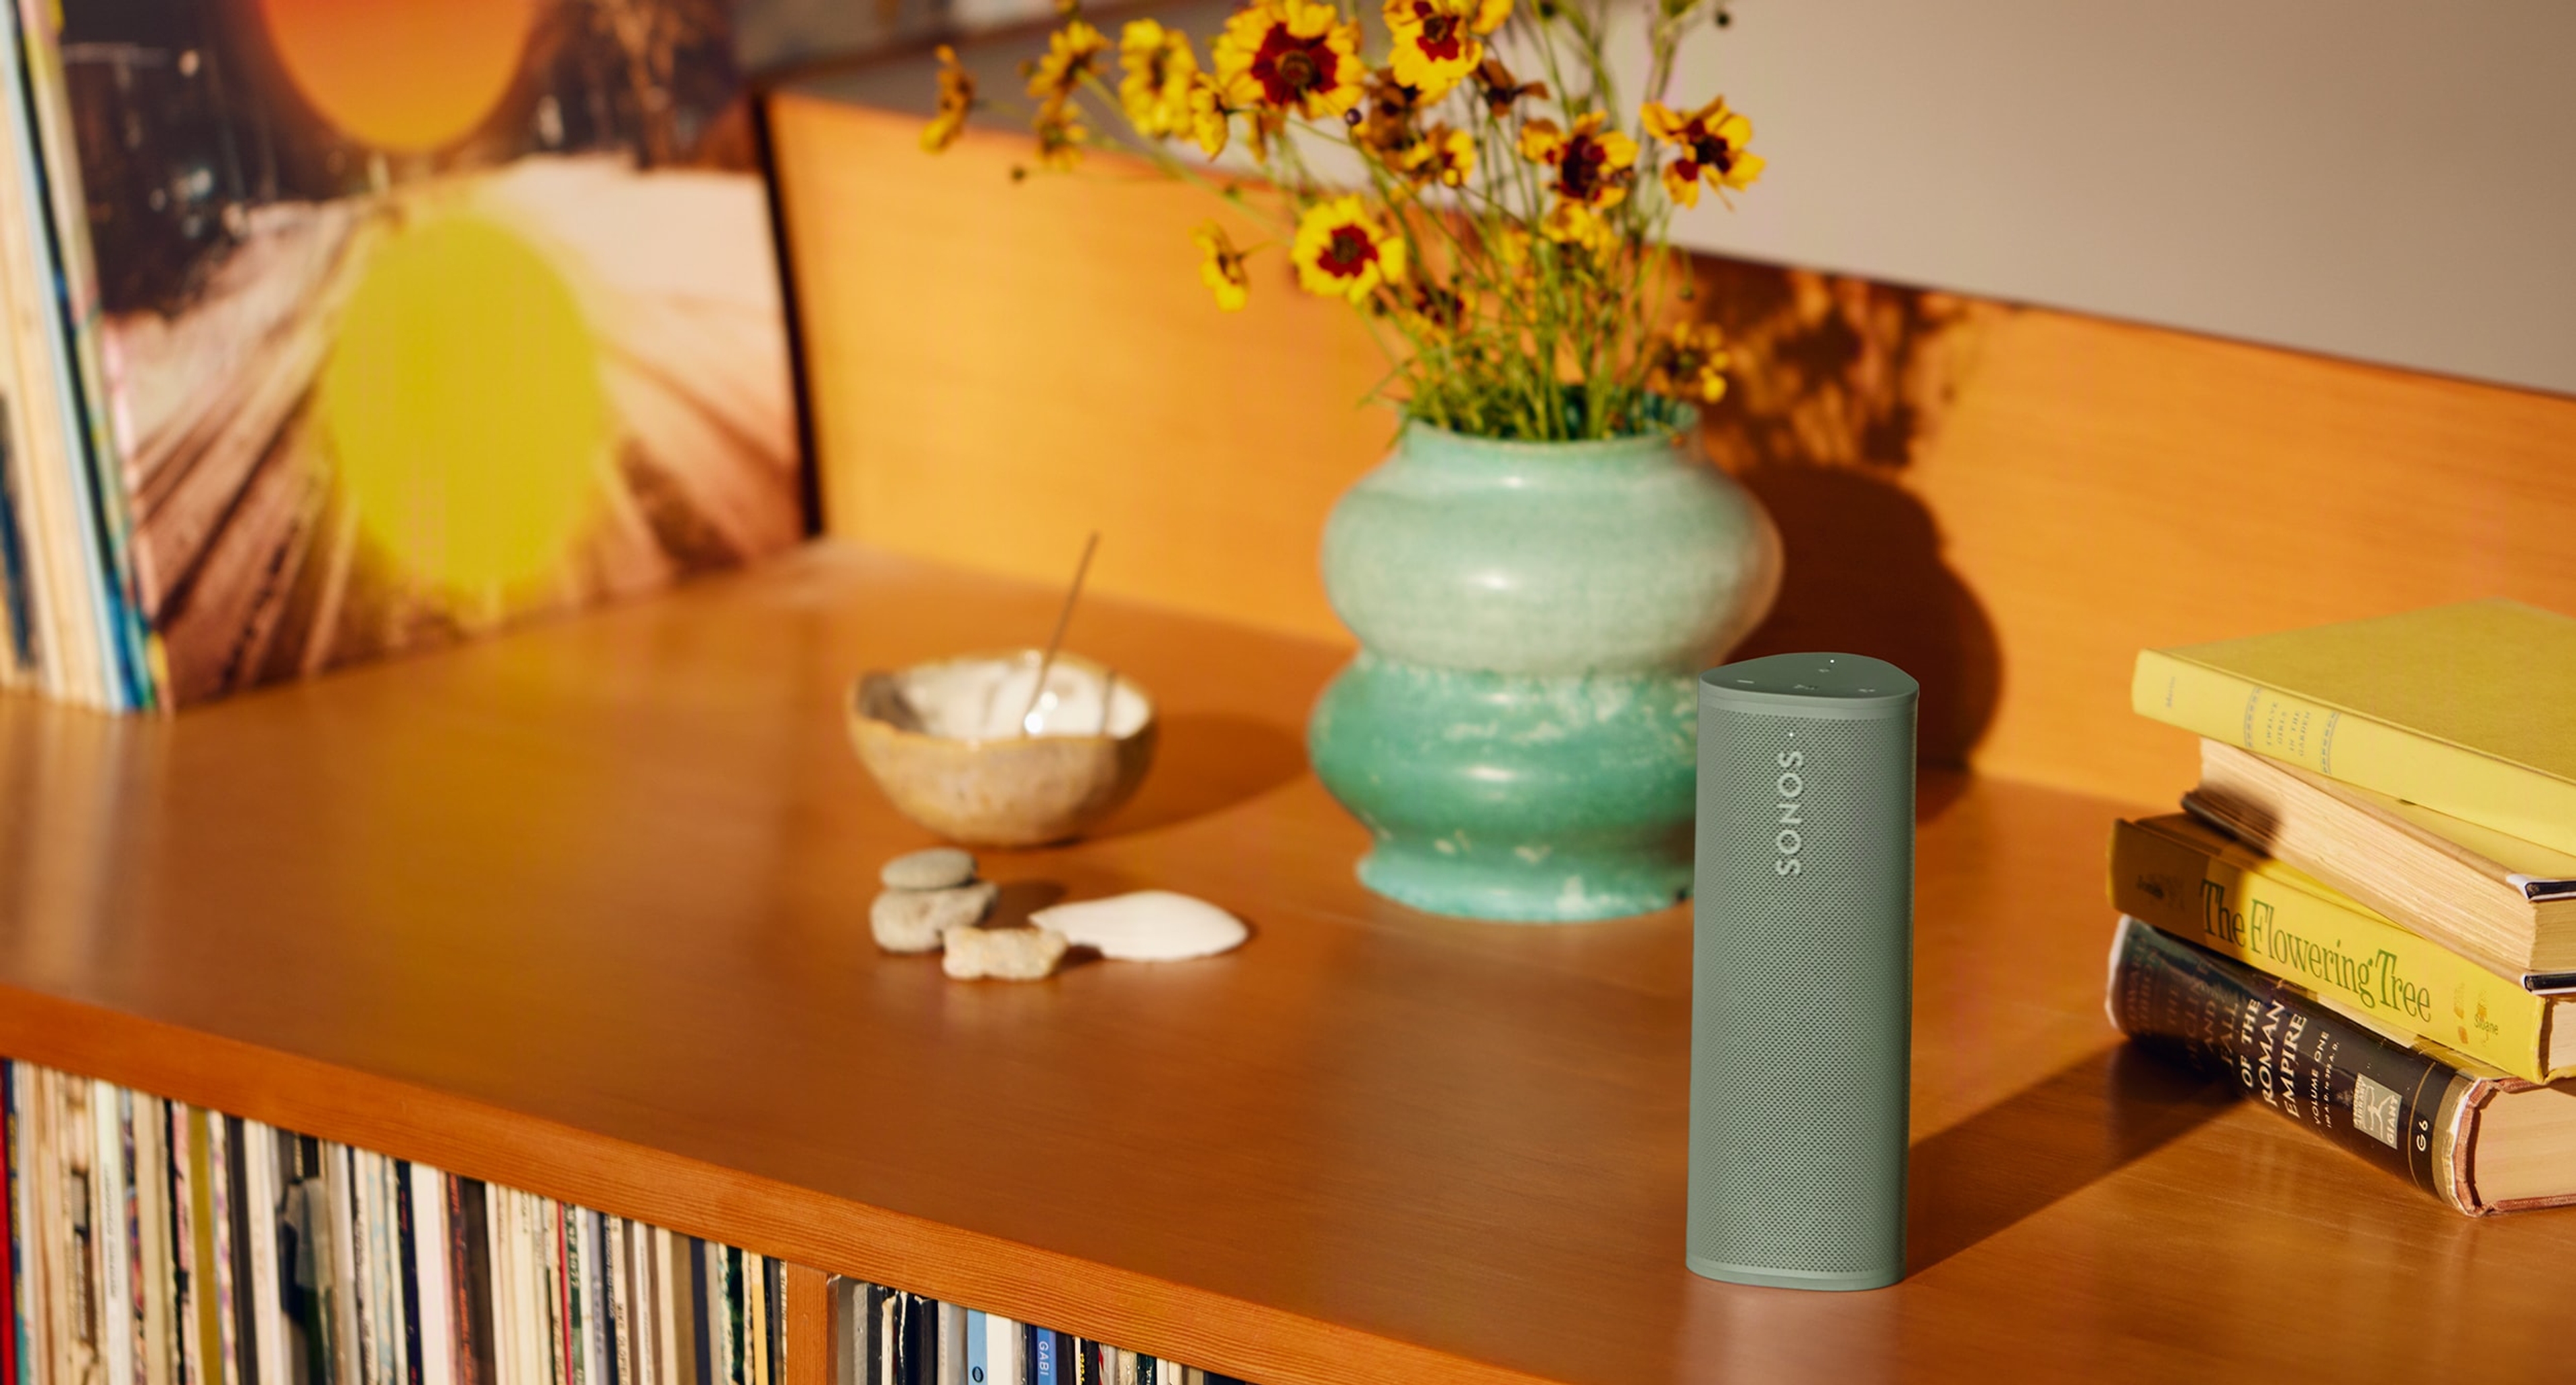 Roam 2 nel colore Olive appoggiato su un mobile insieme ad alcuni libri e dischi, con un vaso verde sullo sfondo